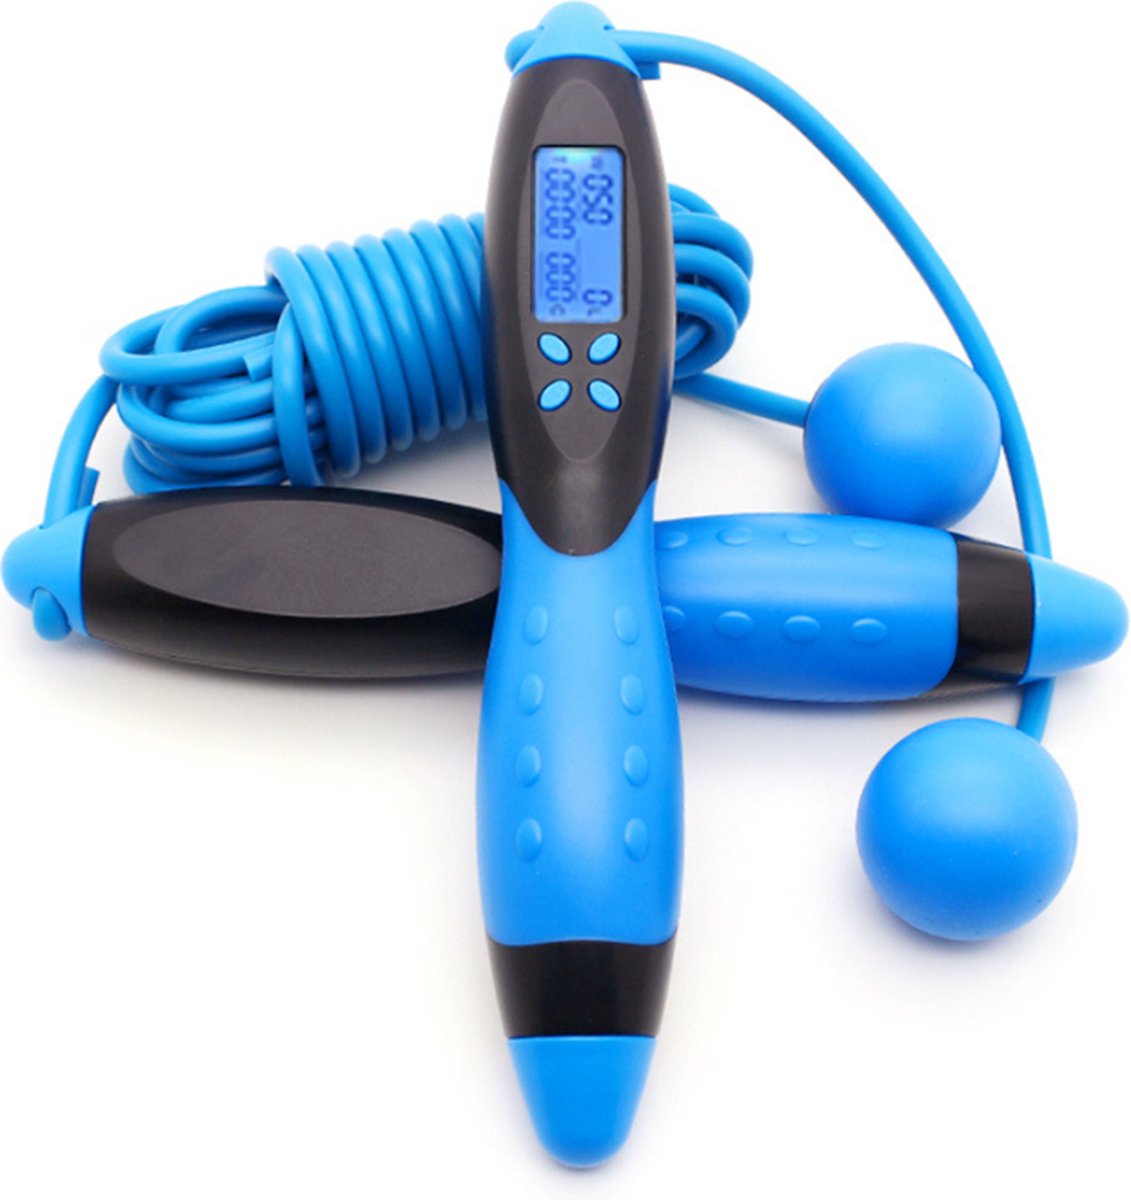 Garpex® Springtouw met Teller - Verzwaard Springtouw - Digitaal Springtouw - Fitness - Cardio - Blauw met Zwart